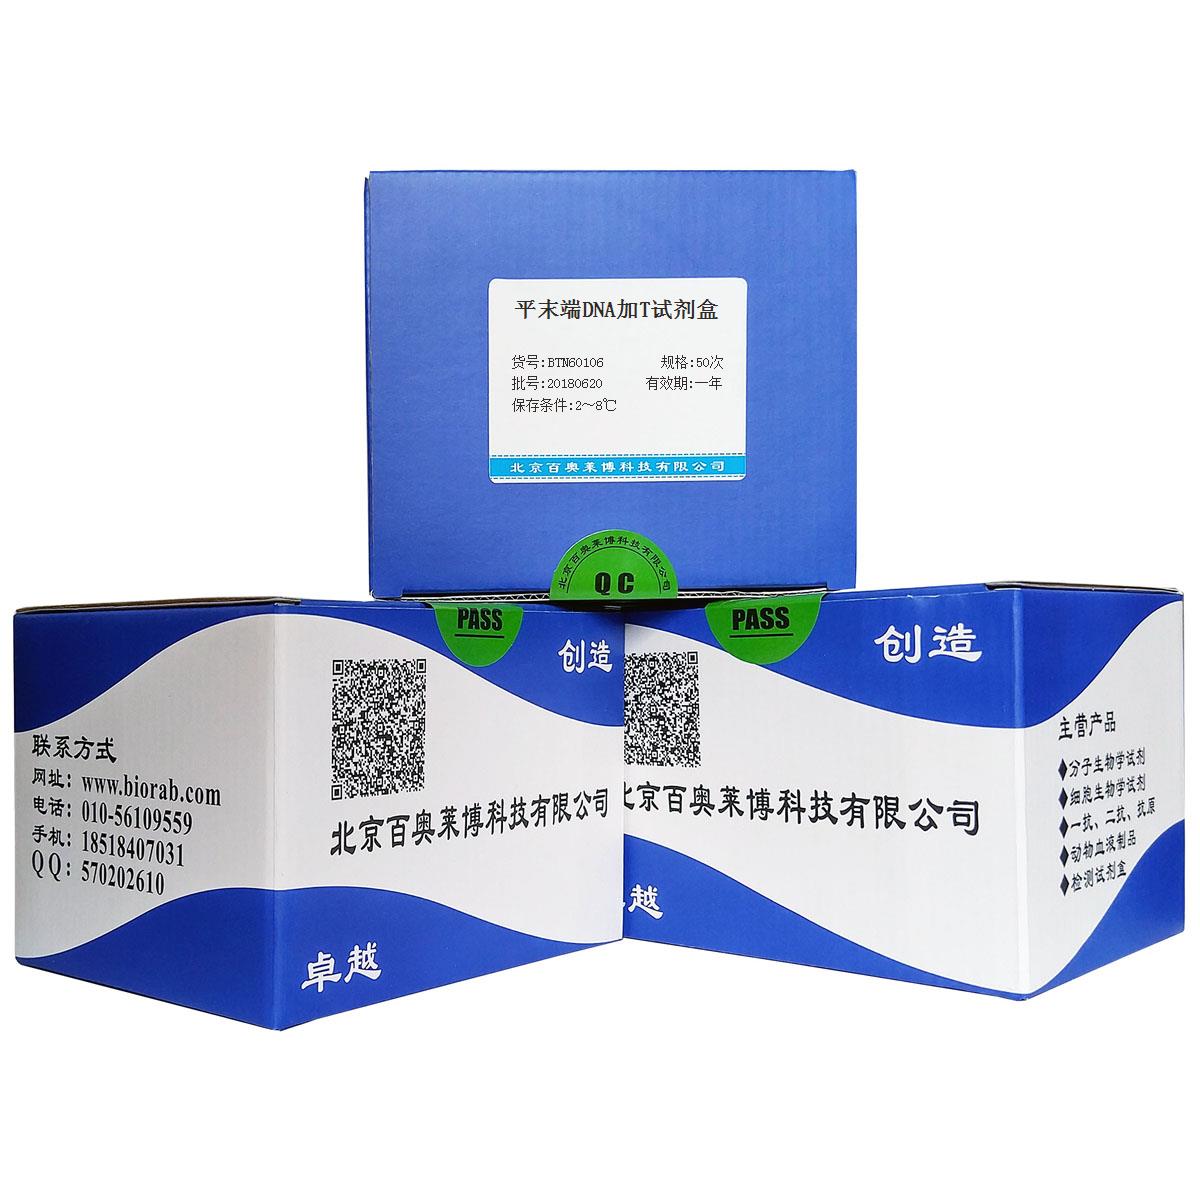 北京现货平末端DNA加T试剂盒优惠